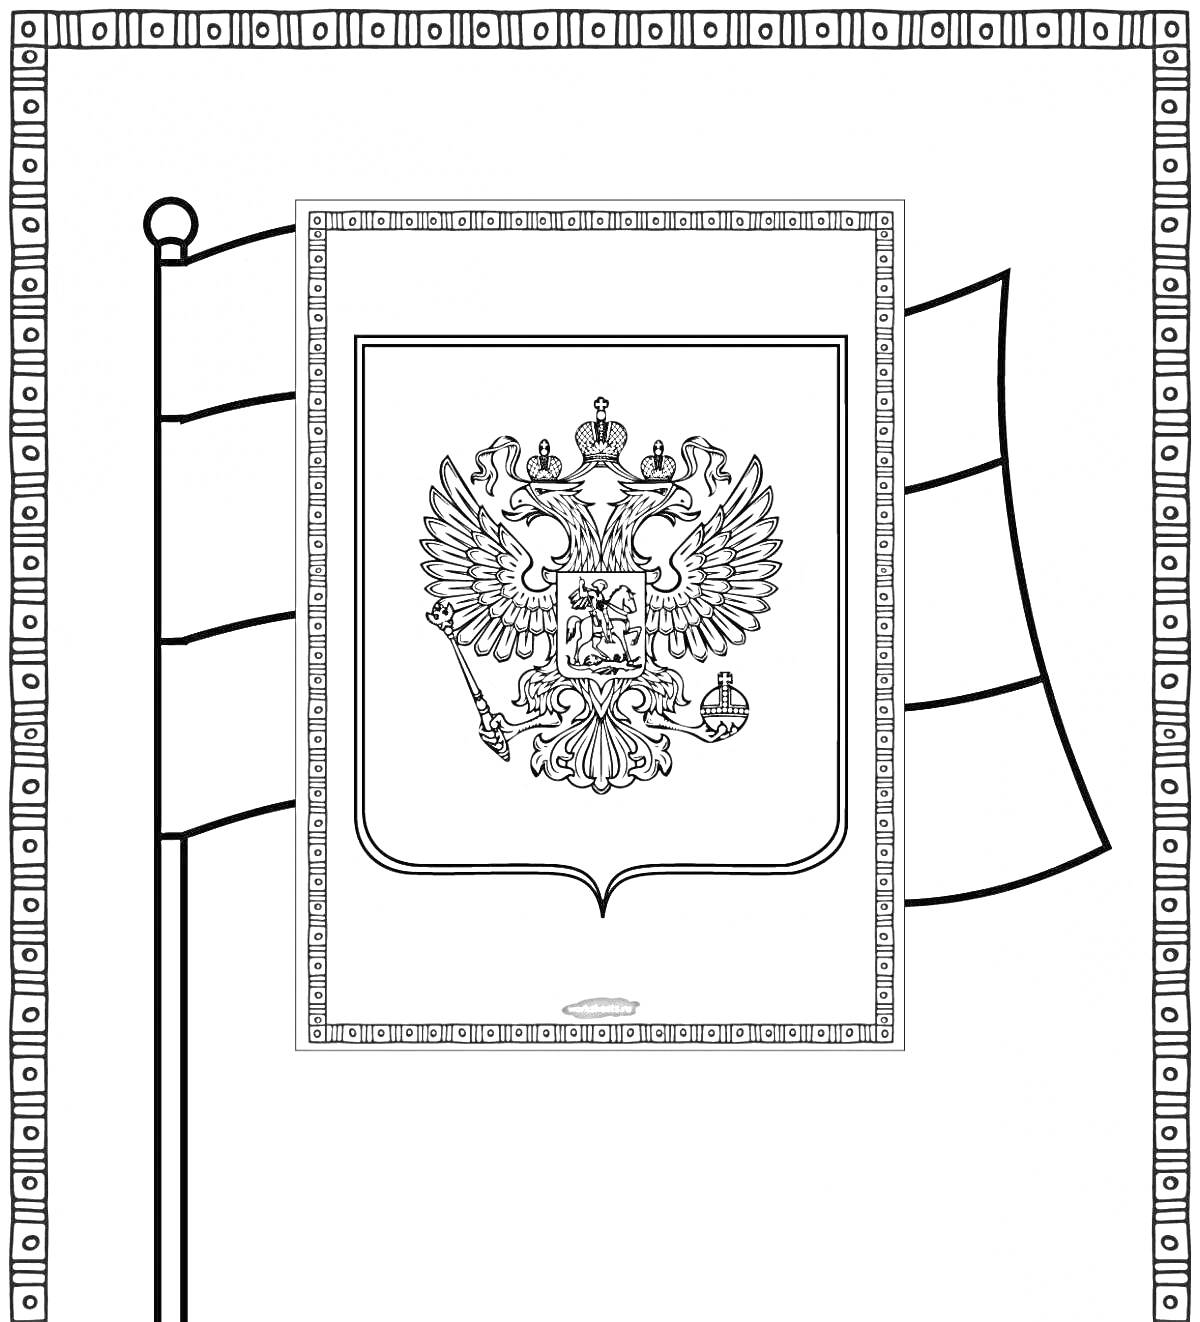 Герб России на знамени с узорной рамкой